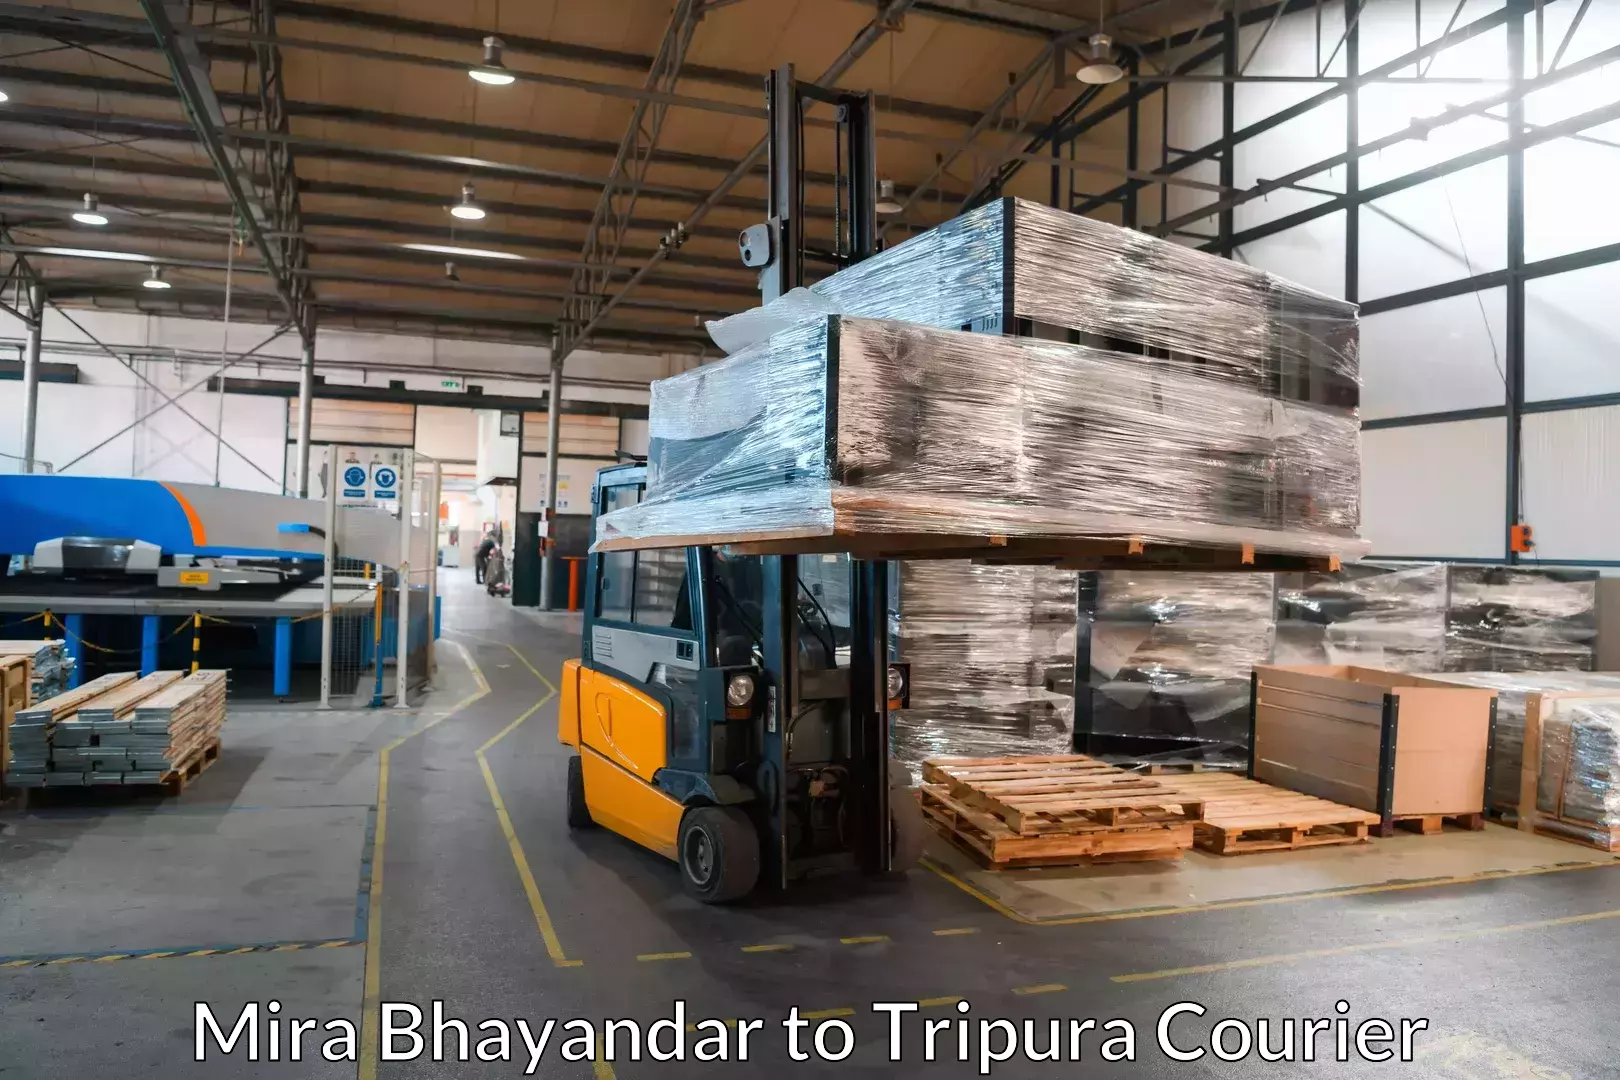 Furniture transport service Mira Bhayandar to IIIT Agartala